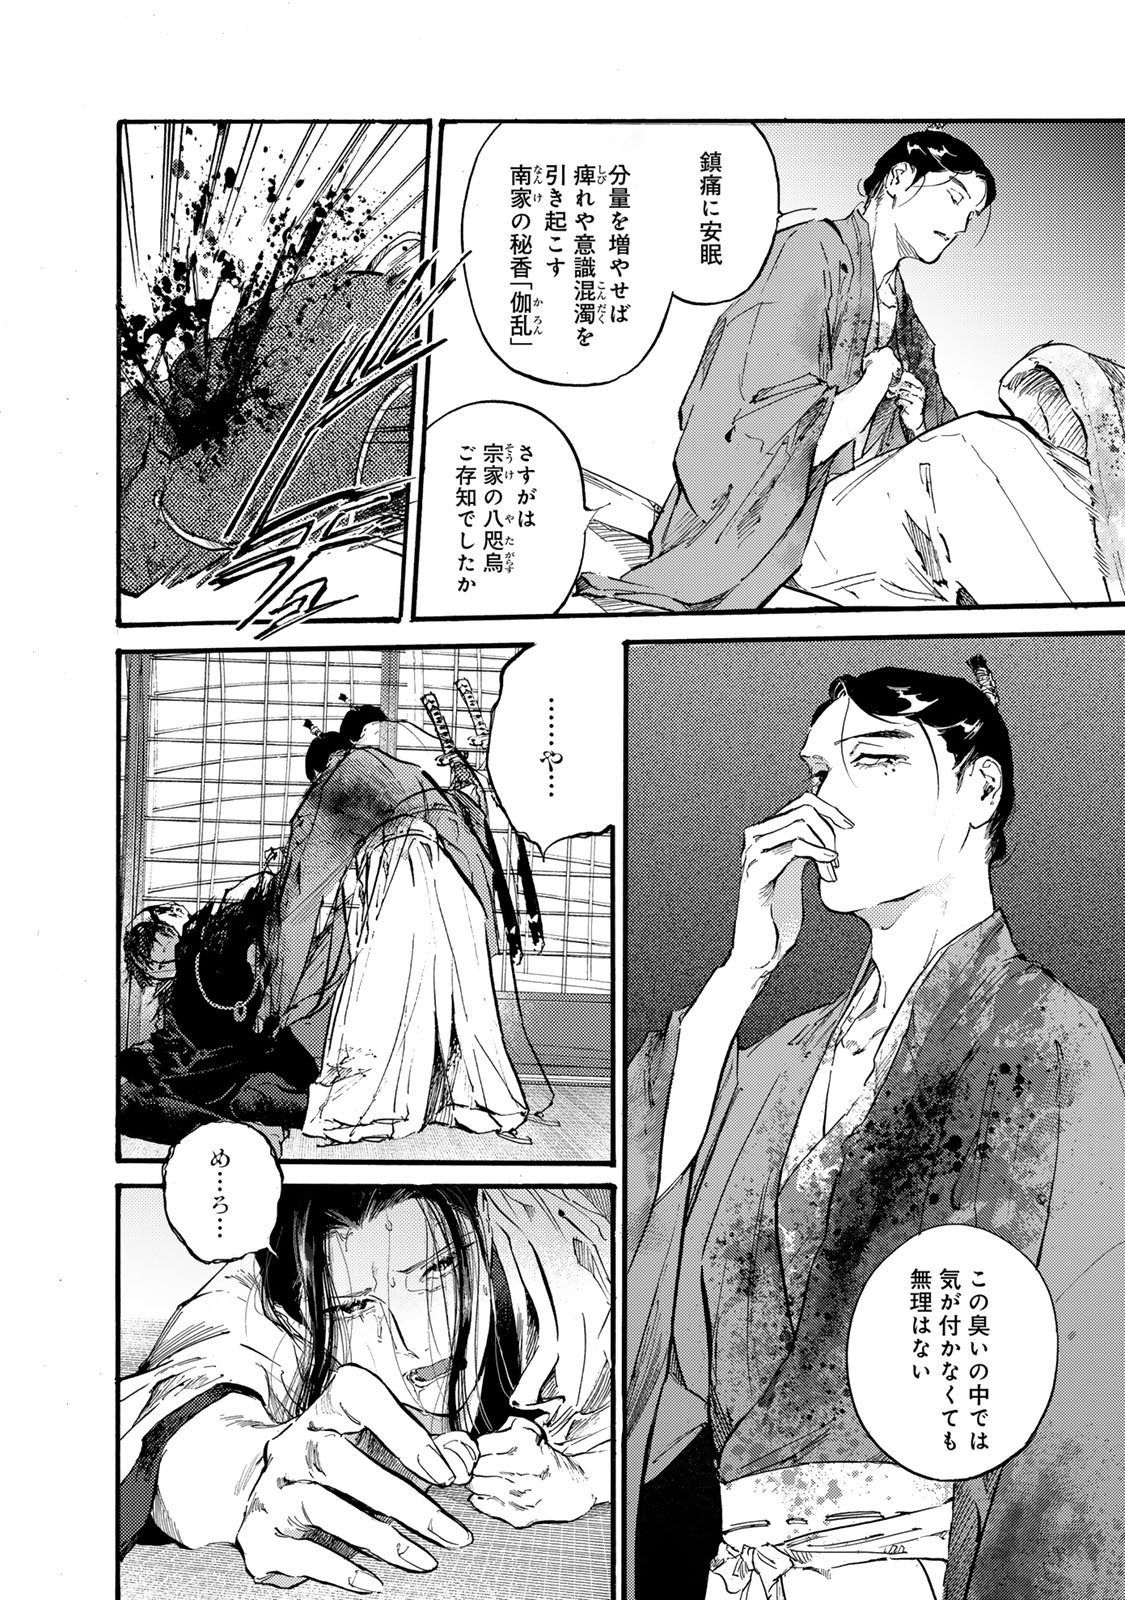 Karasu wa Aruji wo Erabanai - Chapter 40 - Page 12